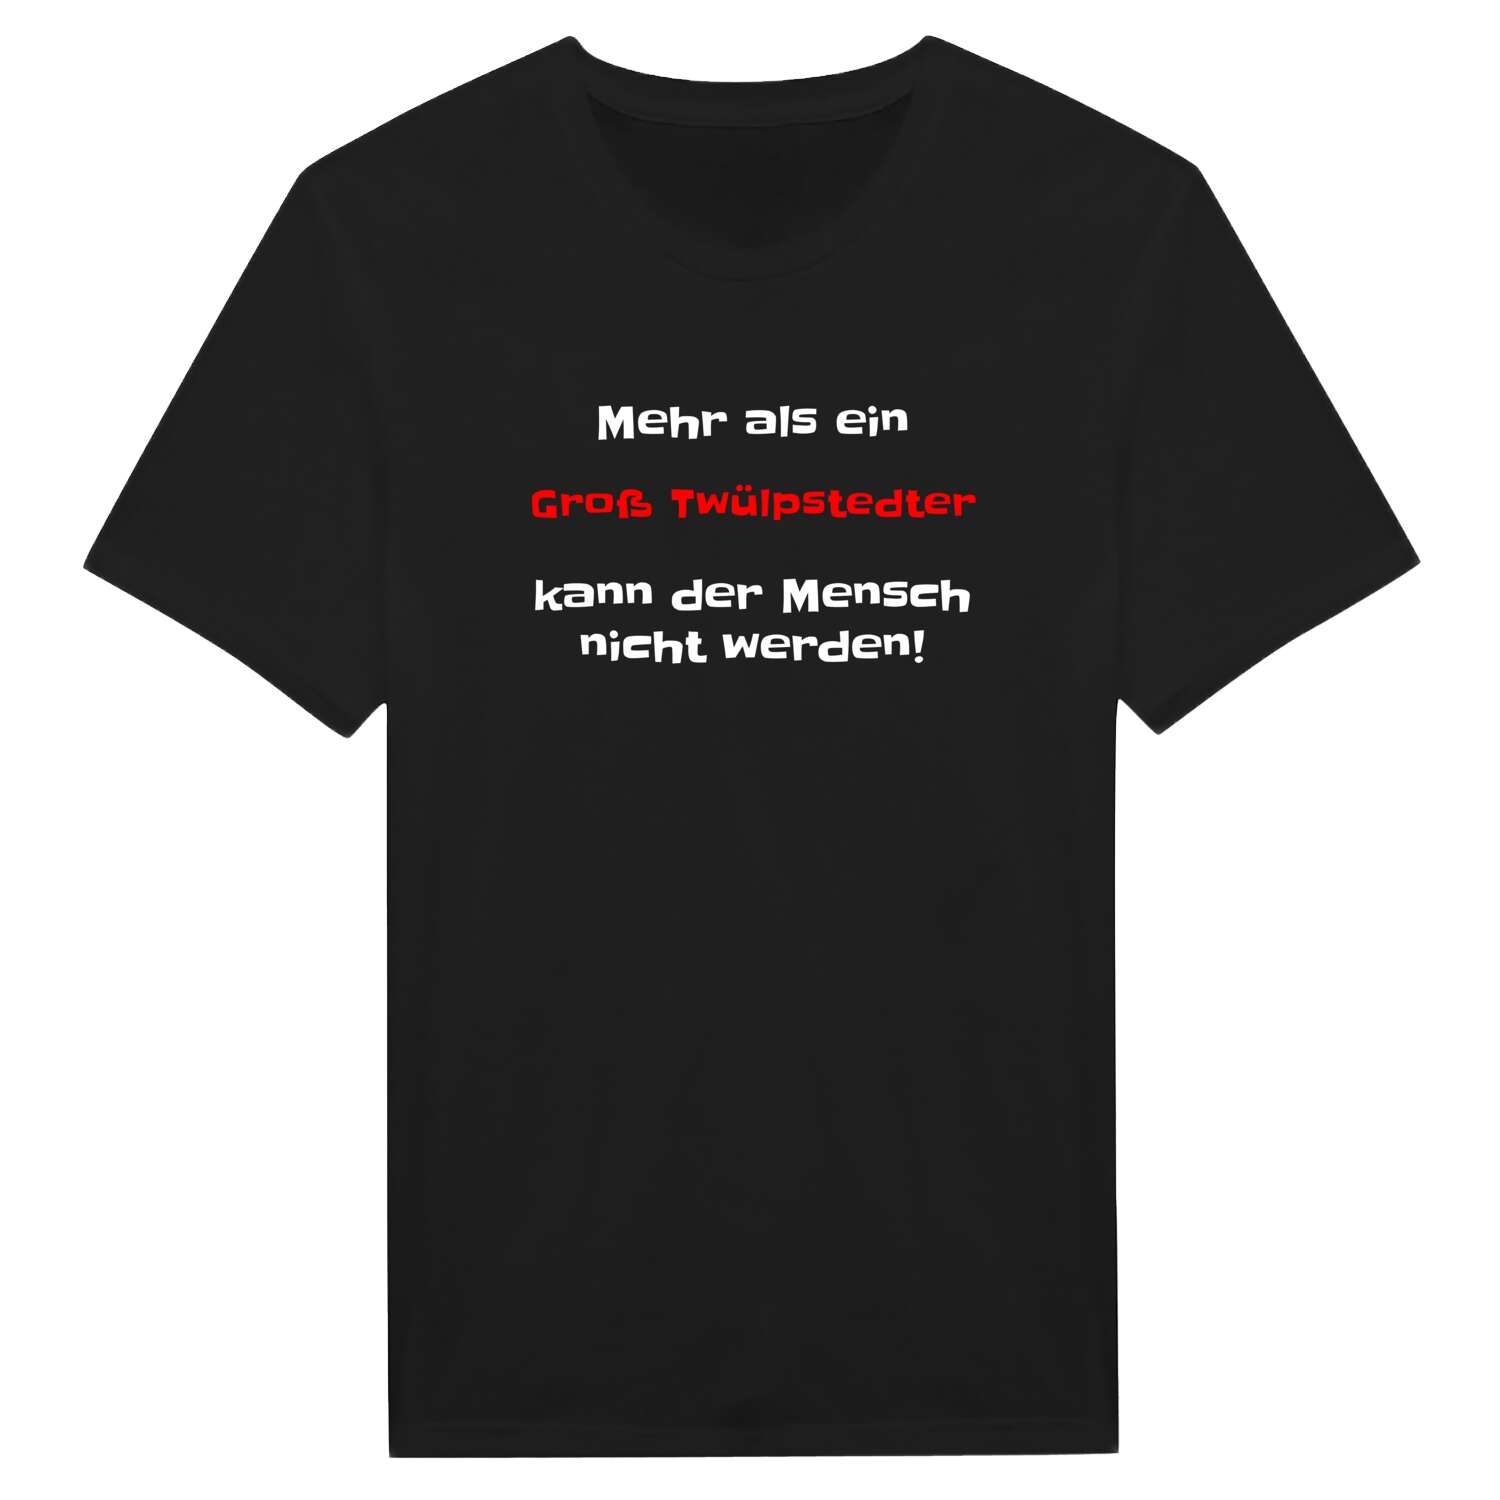 Groß Twülpstedt T-Shirt »Mehr als ein«